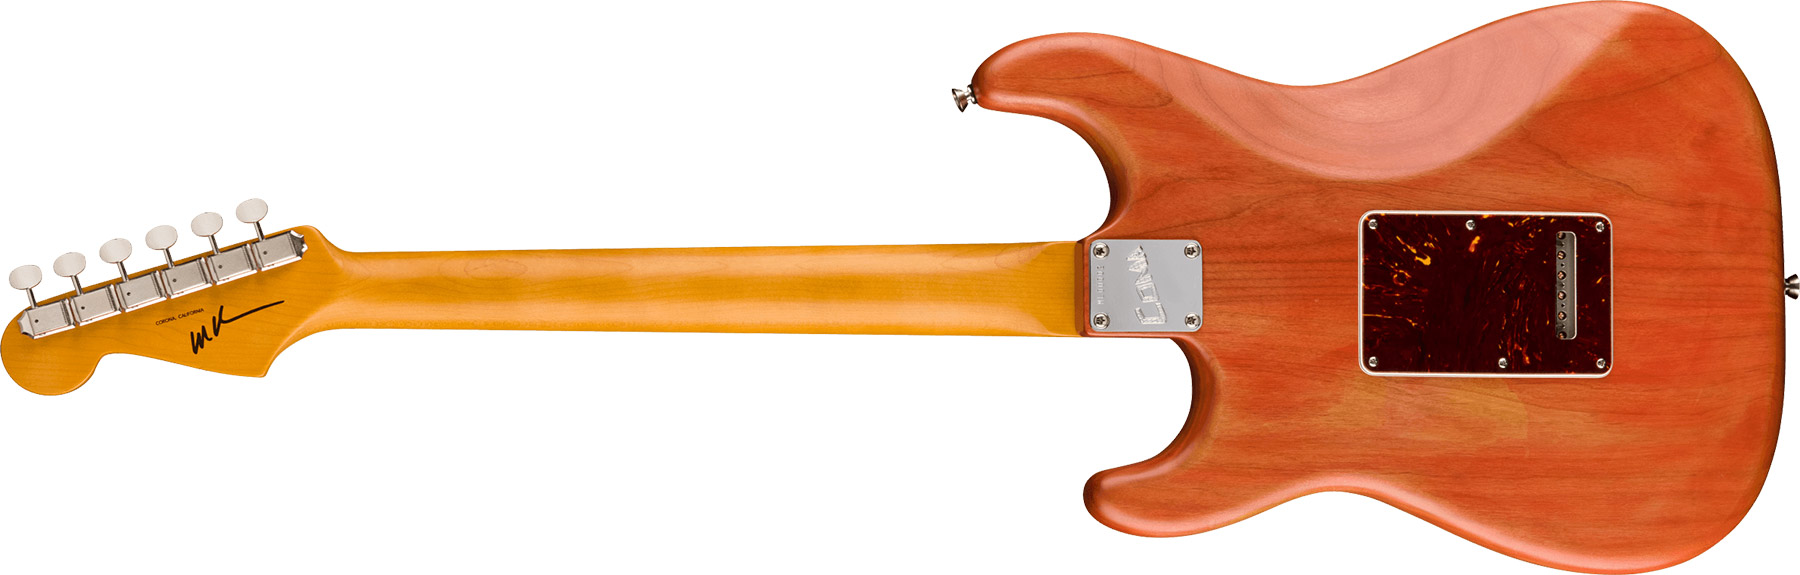 Fender Michael Landau Strat Coma Stories Usa Signature Hss Trem Rw - Coma Red - Elektrische gitaar in Str-vorm - Variation 1